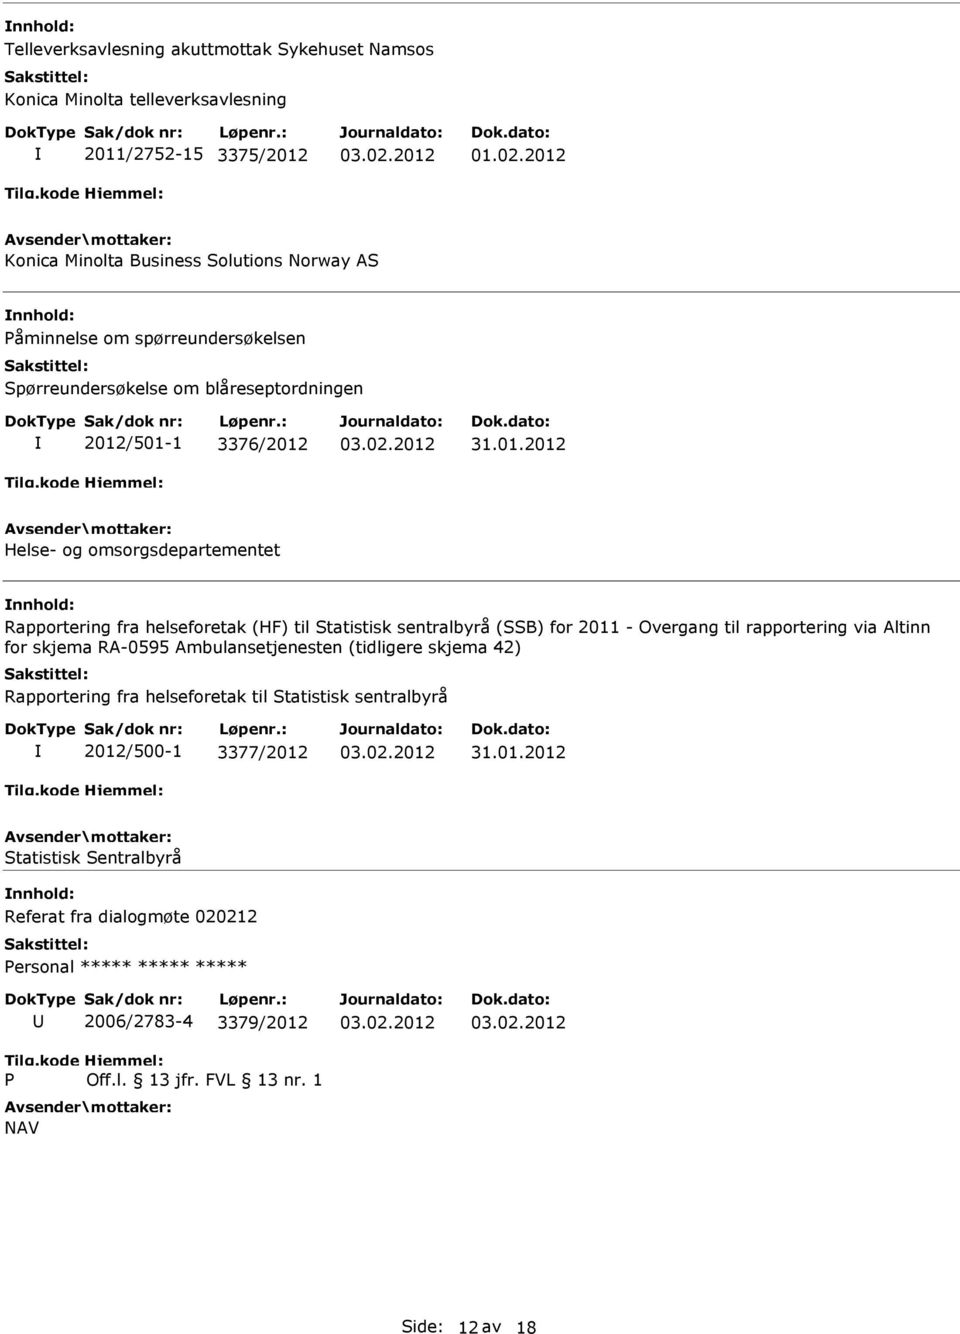 sentralbyrå (SSB) for 2011 - Overgang til rapportering via Altinn for skjema RA-0595 Ambulansetjenesten (tidligere skjema 42) Rapportering fra helseforetak til